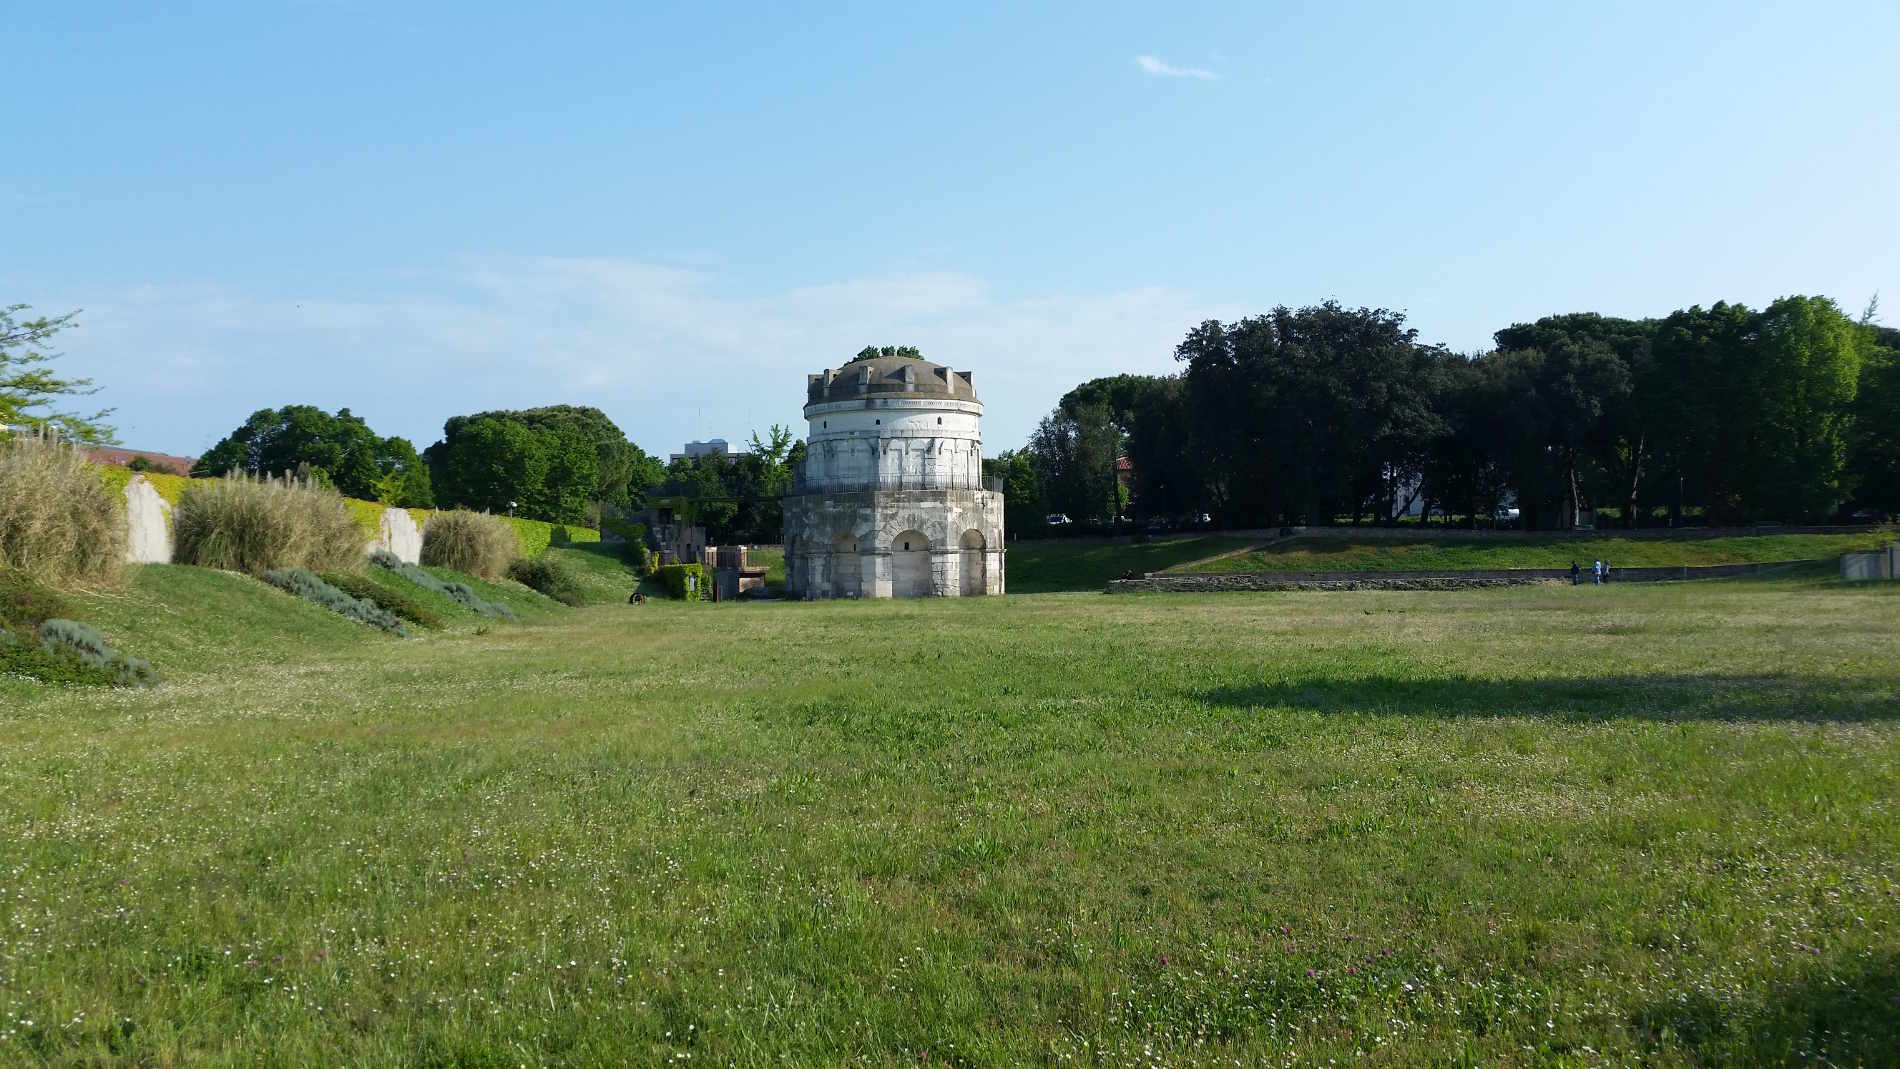 Guida a Ravenna: cosa vedere e fare - Il Mausoleo di Teodorico, uno fra gli 8 siti UNESCO da ammirare in questa città!